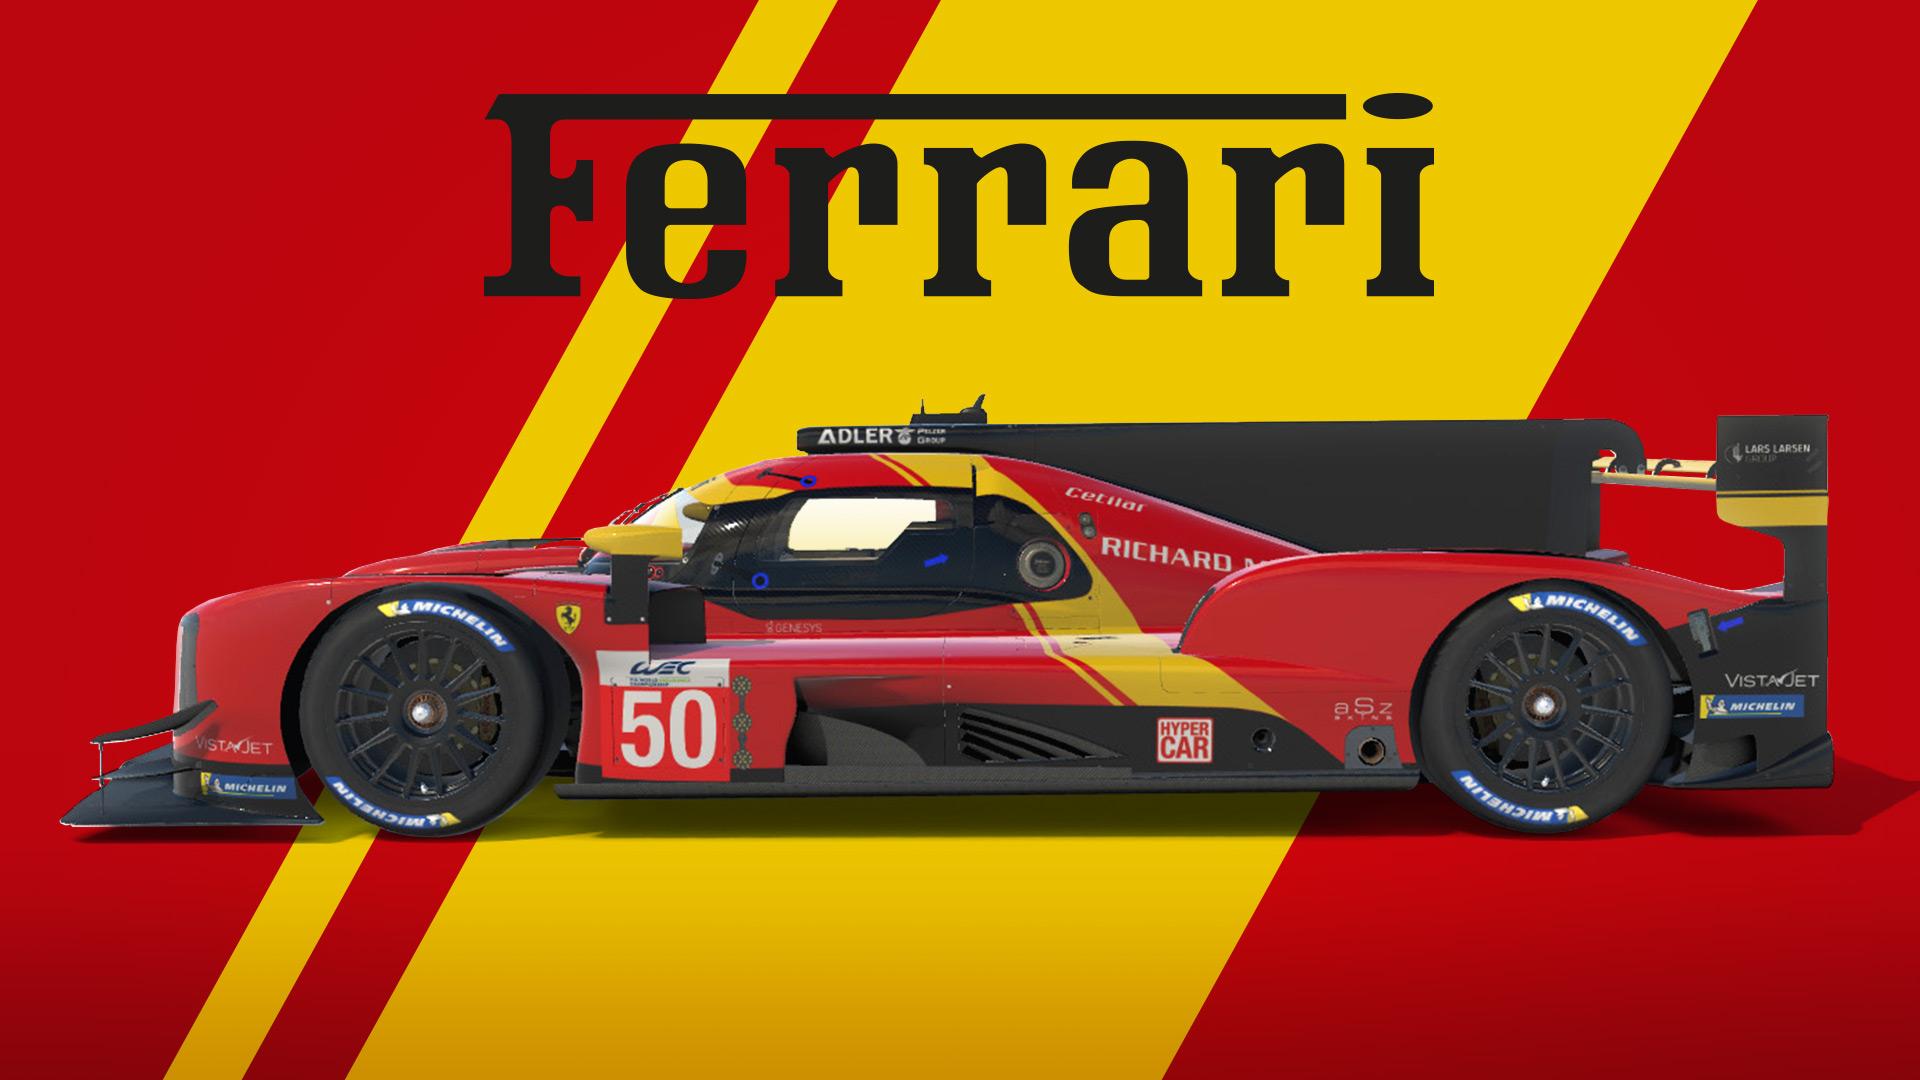 Preview of Ferrari 499 P hypercar by Alex Schmurtz